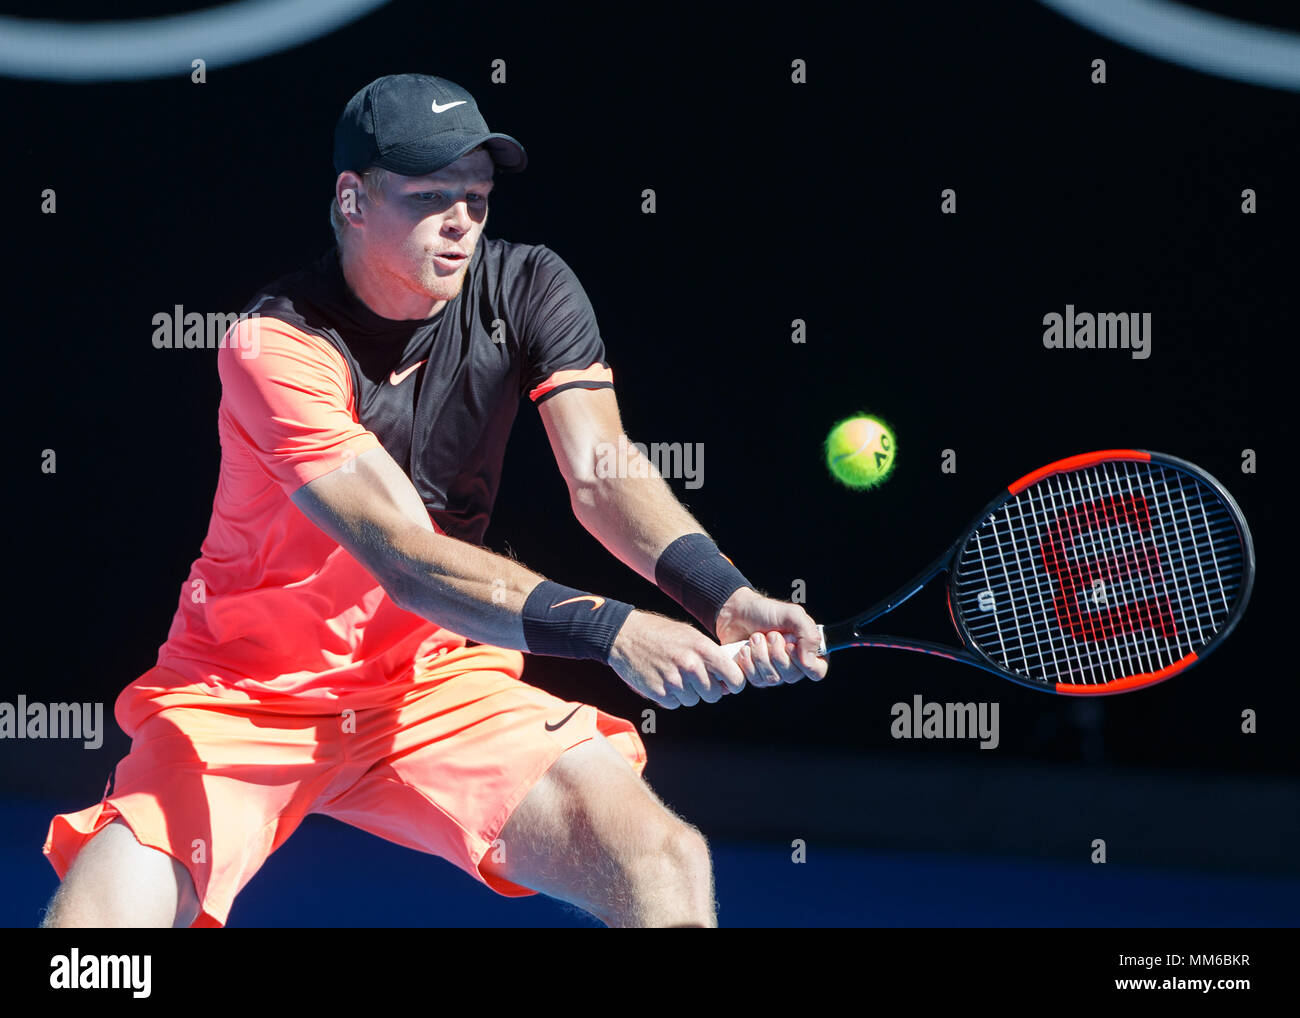 British giocatore di tennis Kyle Edmund giocando in Australian Open 2018 Torneo di Tennis, Melbourne Park, Melbourne, Victoria, Australia. Foto Stock